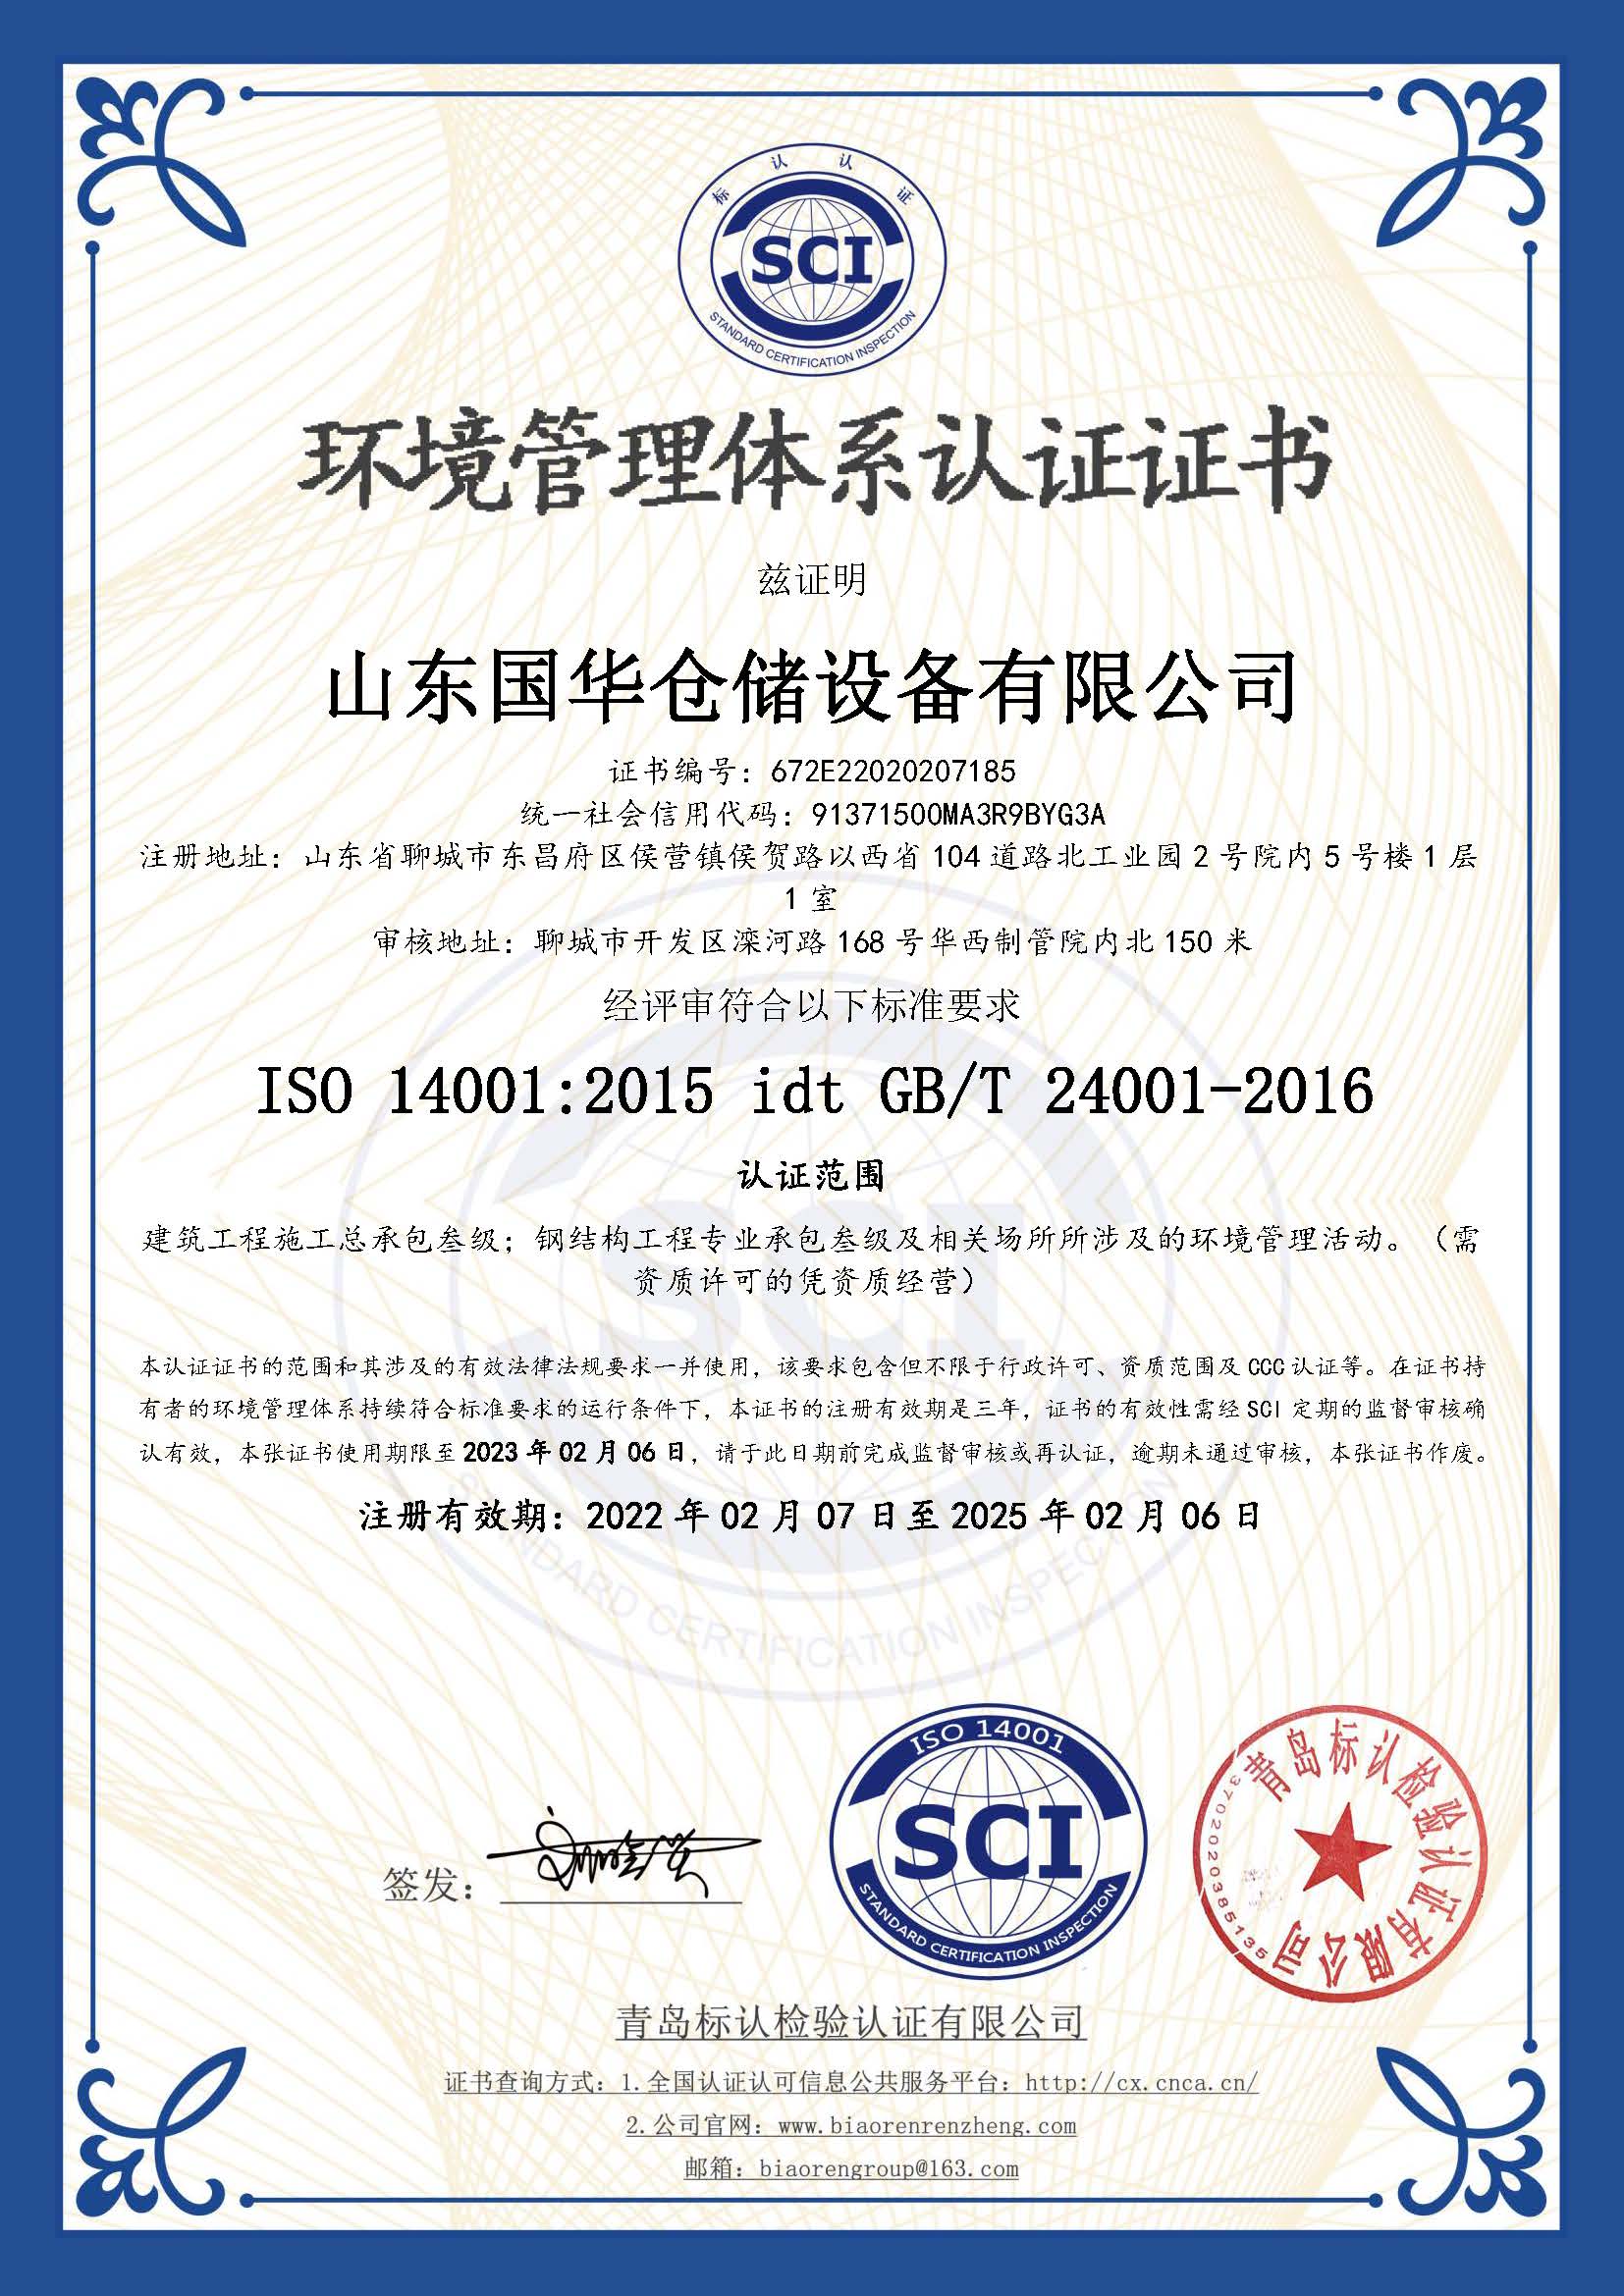 可克达拉钢板仓环境管理体系认证证书